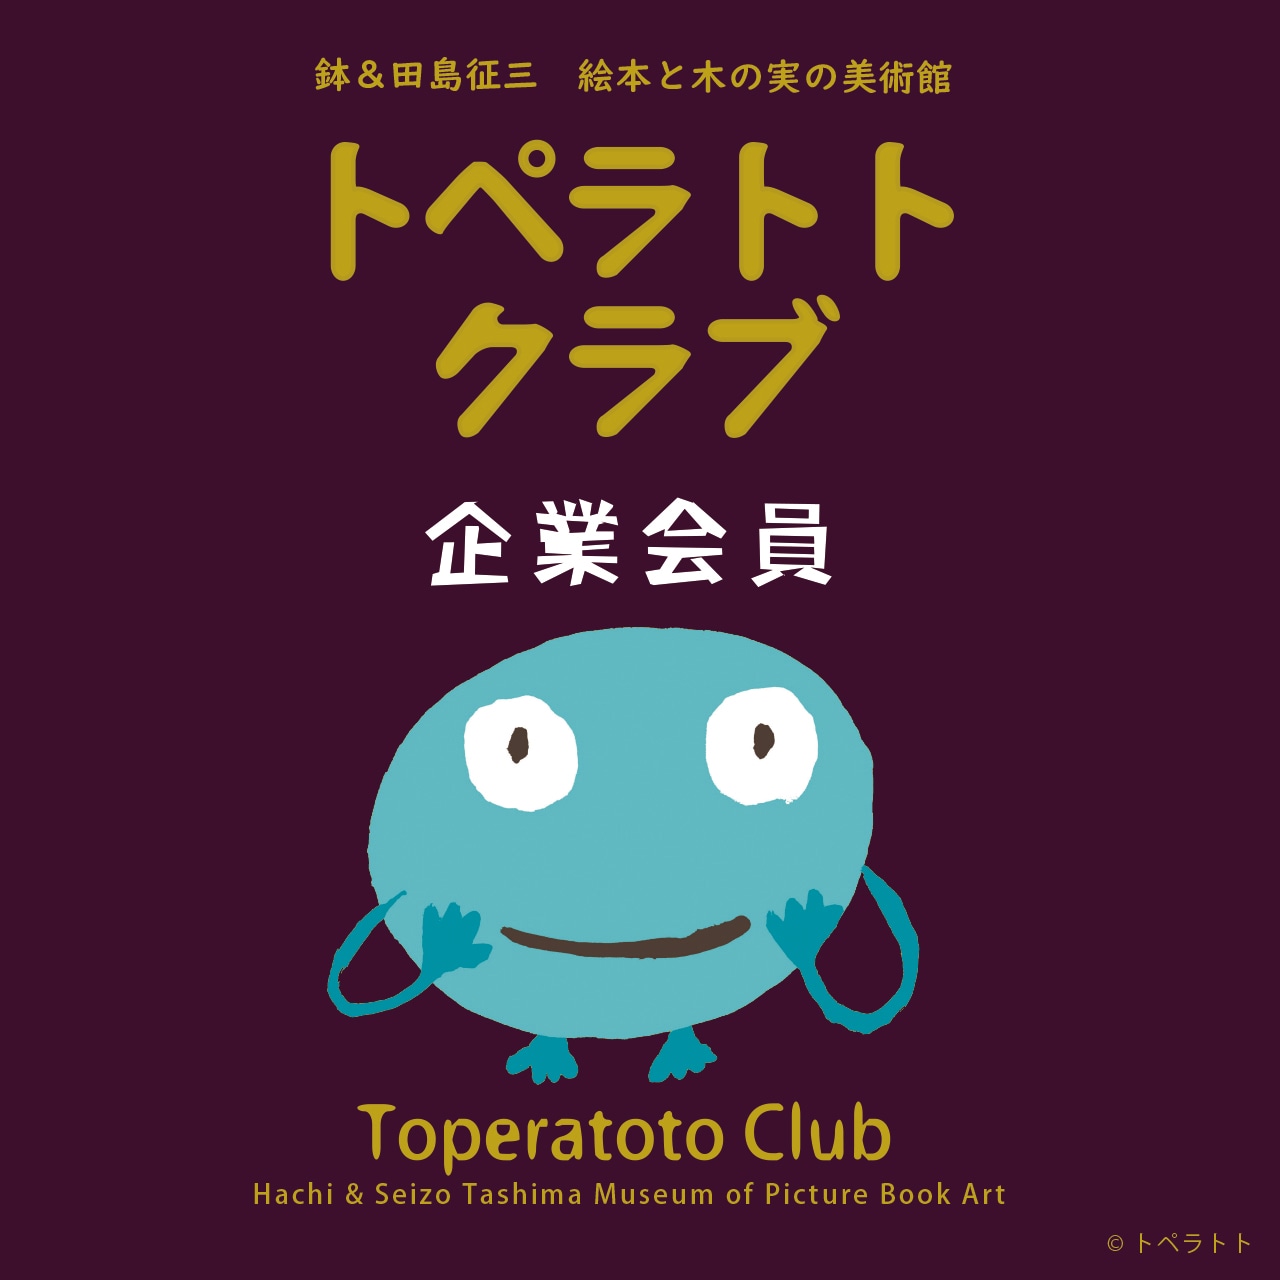 トペラトトクラブ【企業会員】/ Toperatoto Club (Corporate Member)